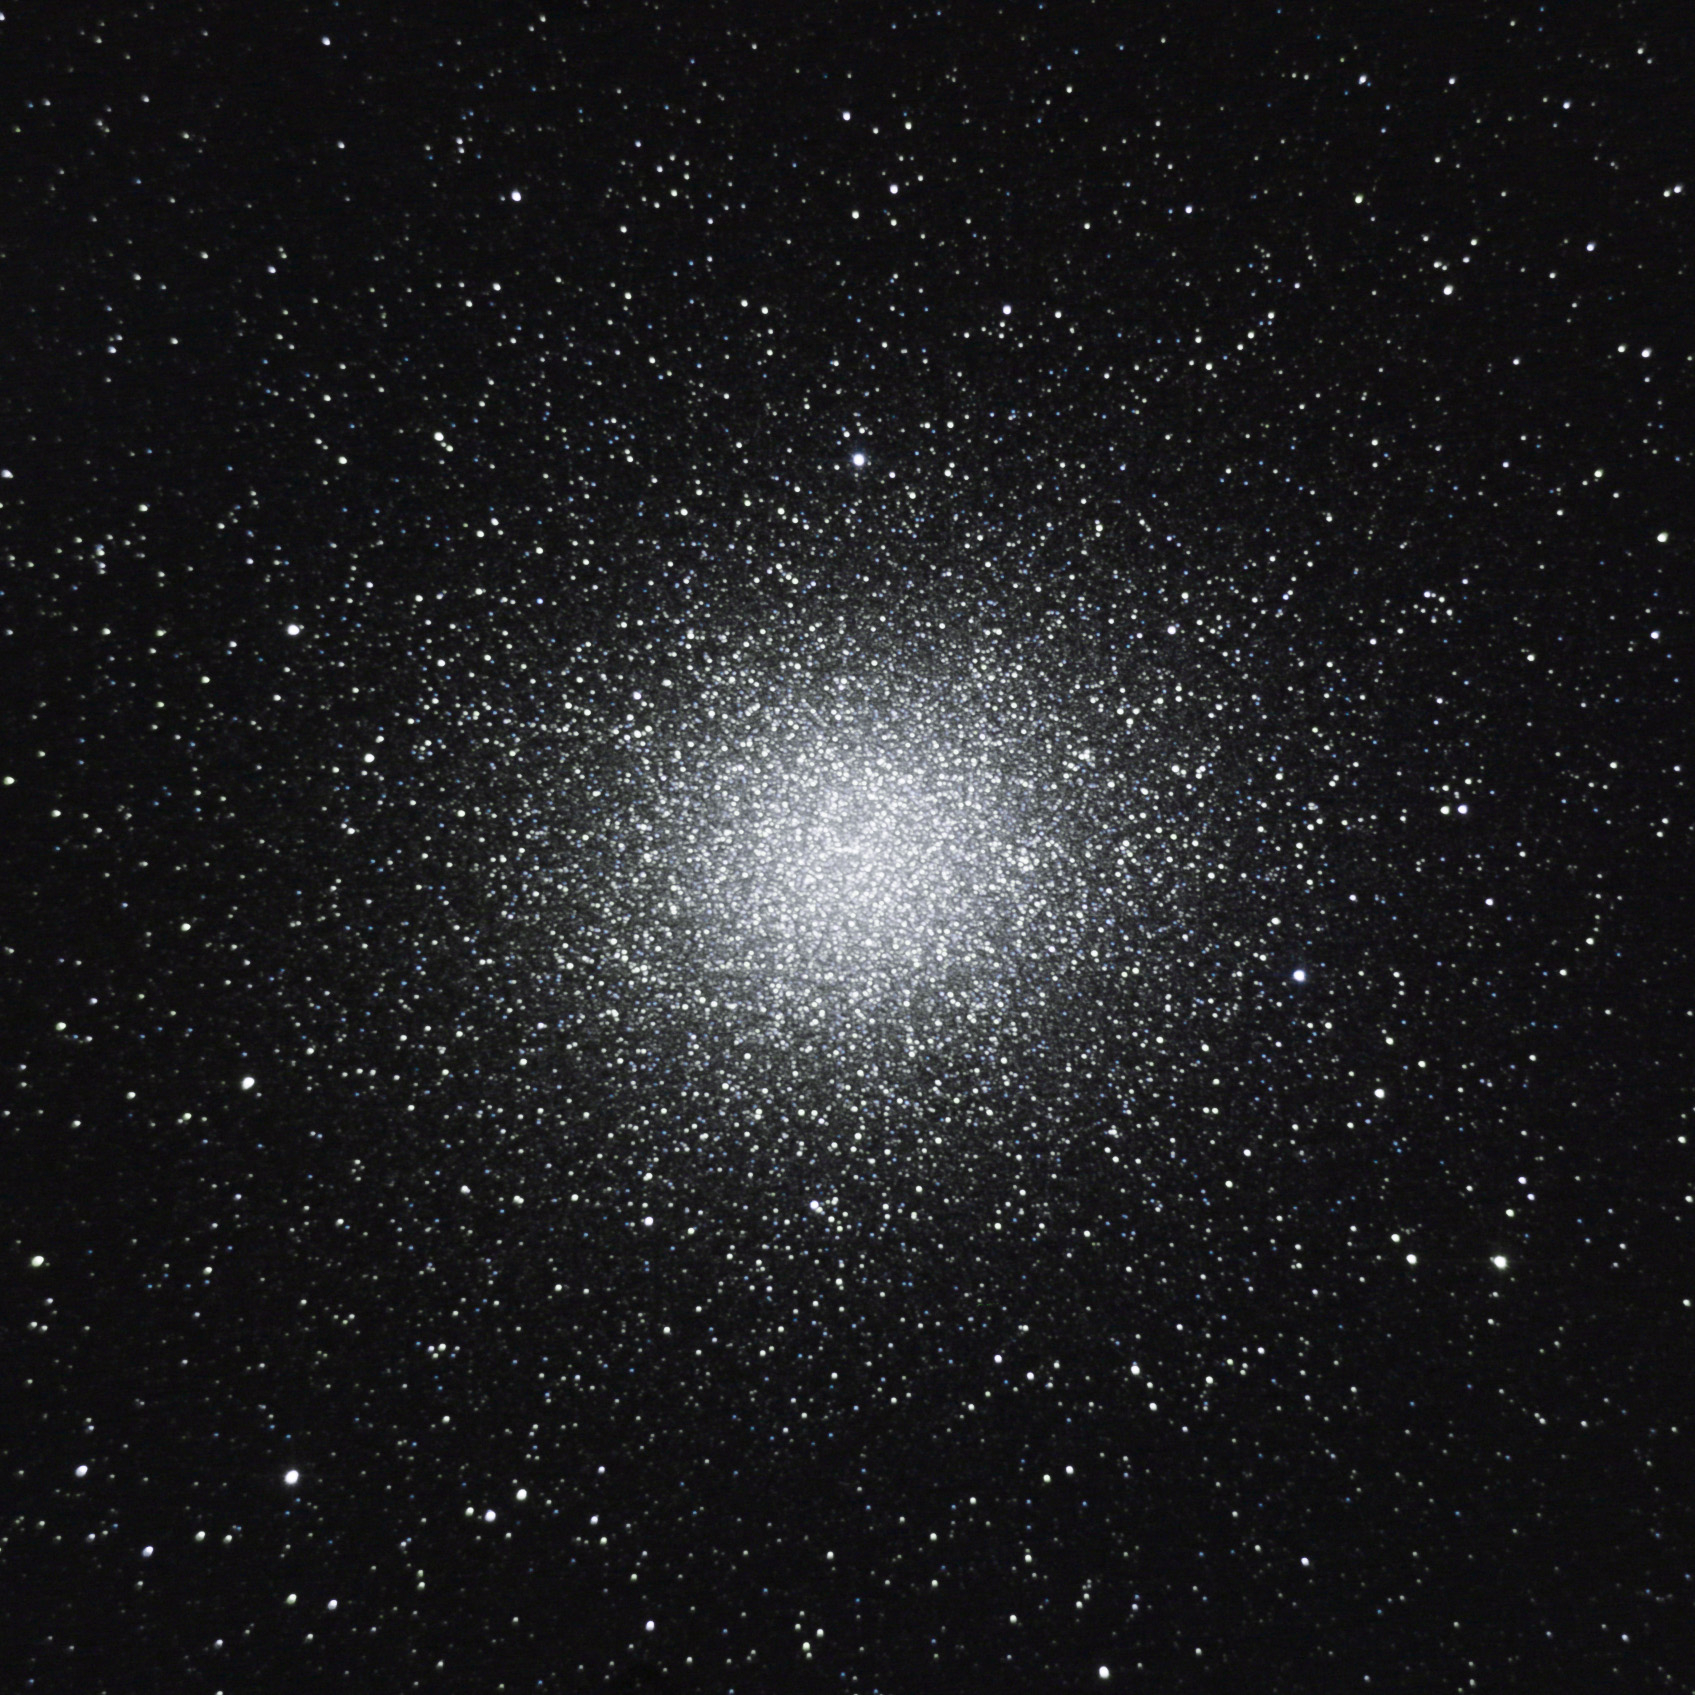 Omega Centauri (NGC 5139)